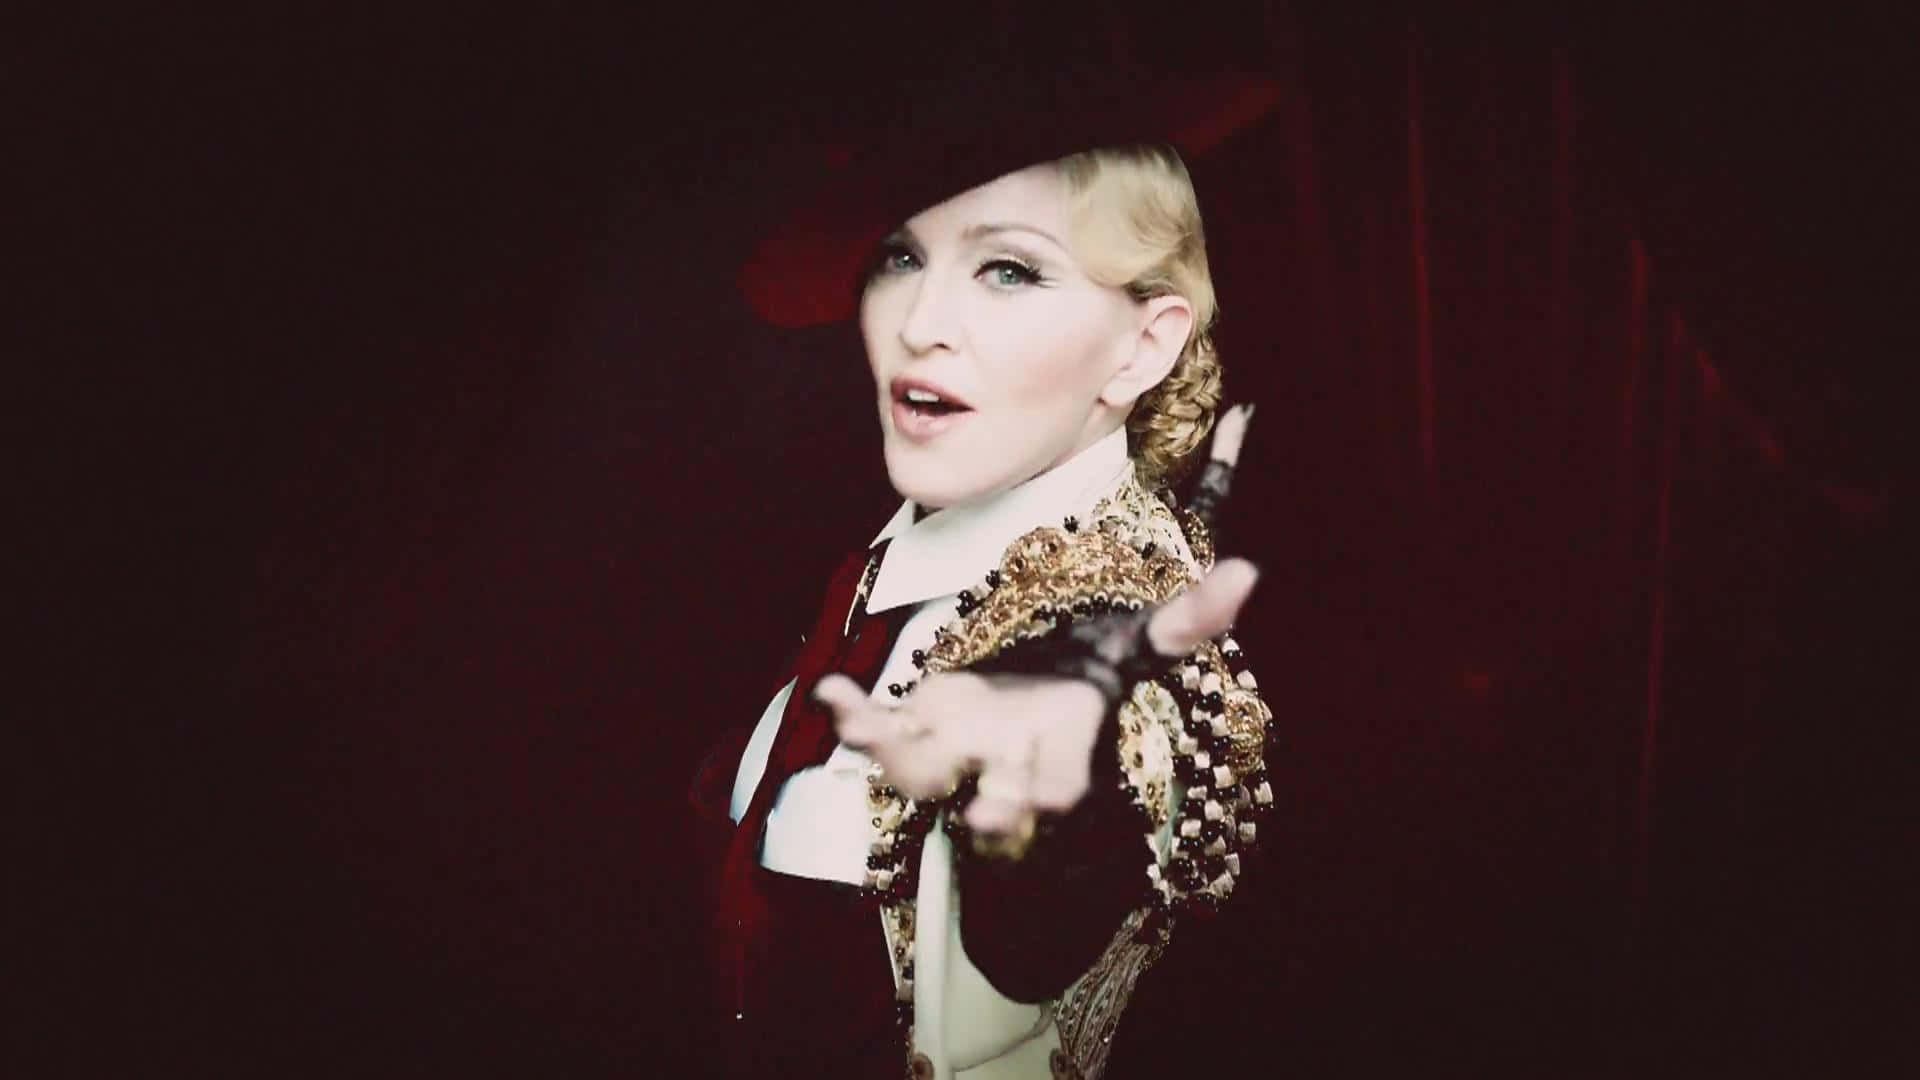 Madonnariporta La Sua Iconica Immagine Dal Video Musicale In Questo Ritratto Senza Tempo.